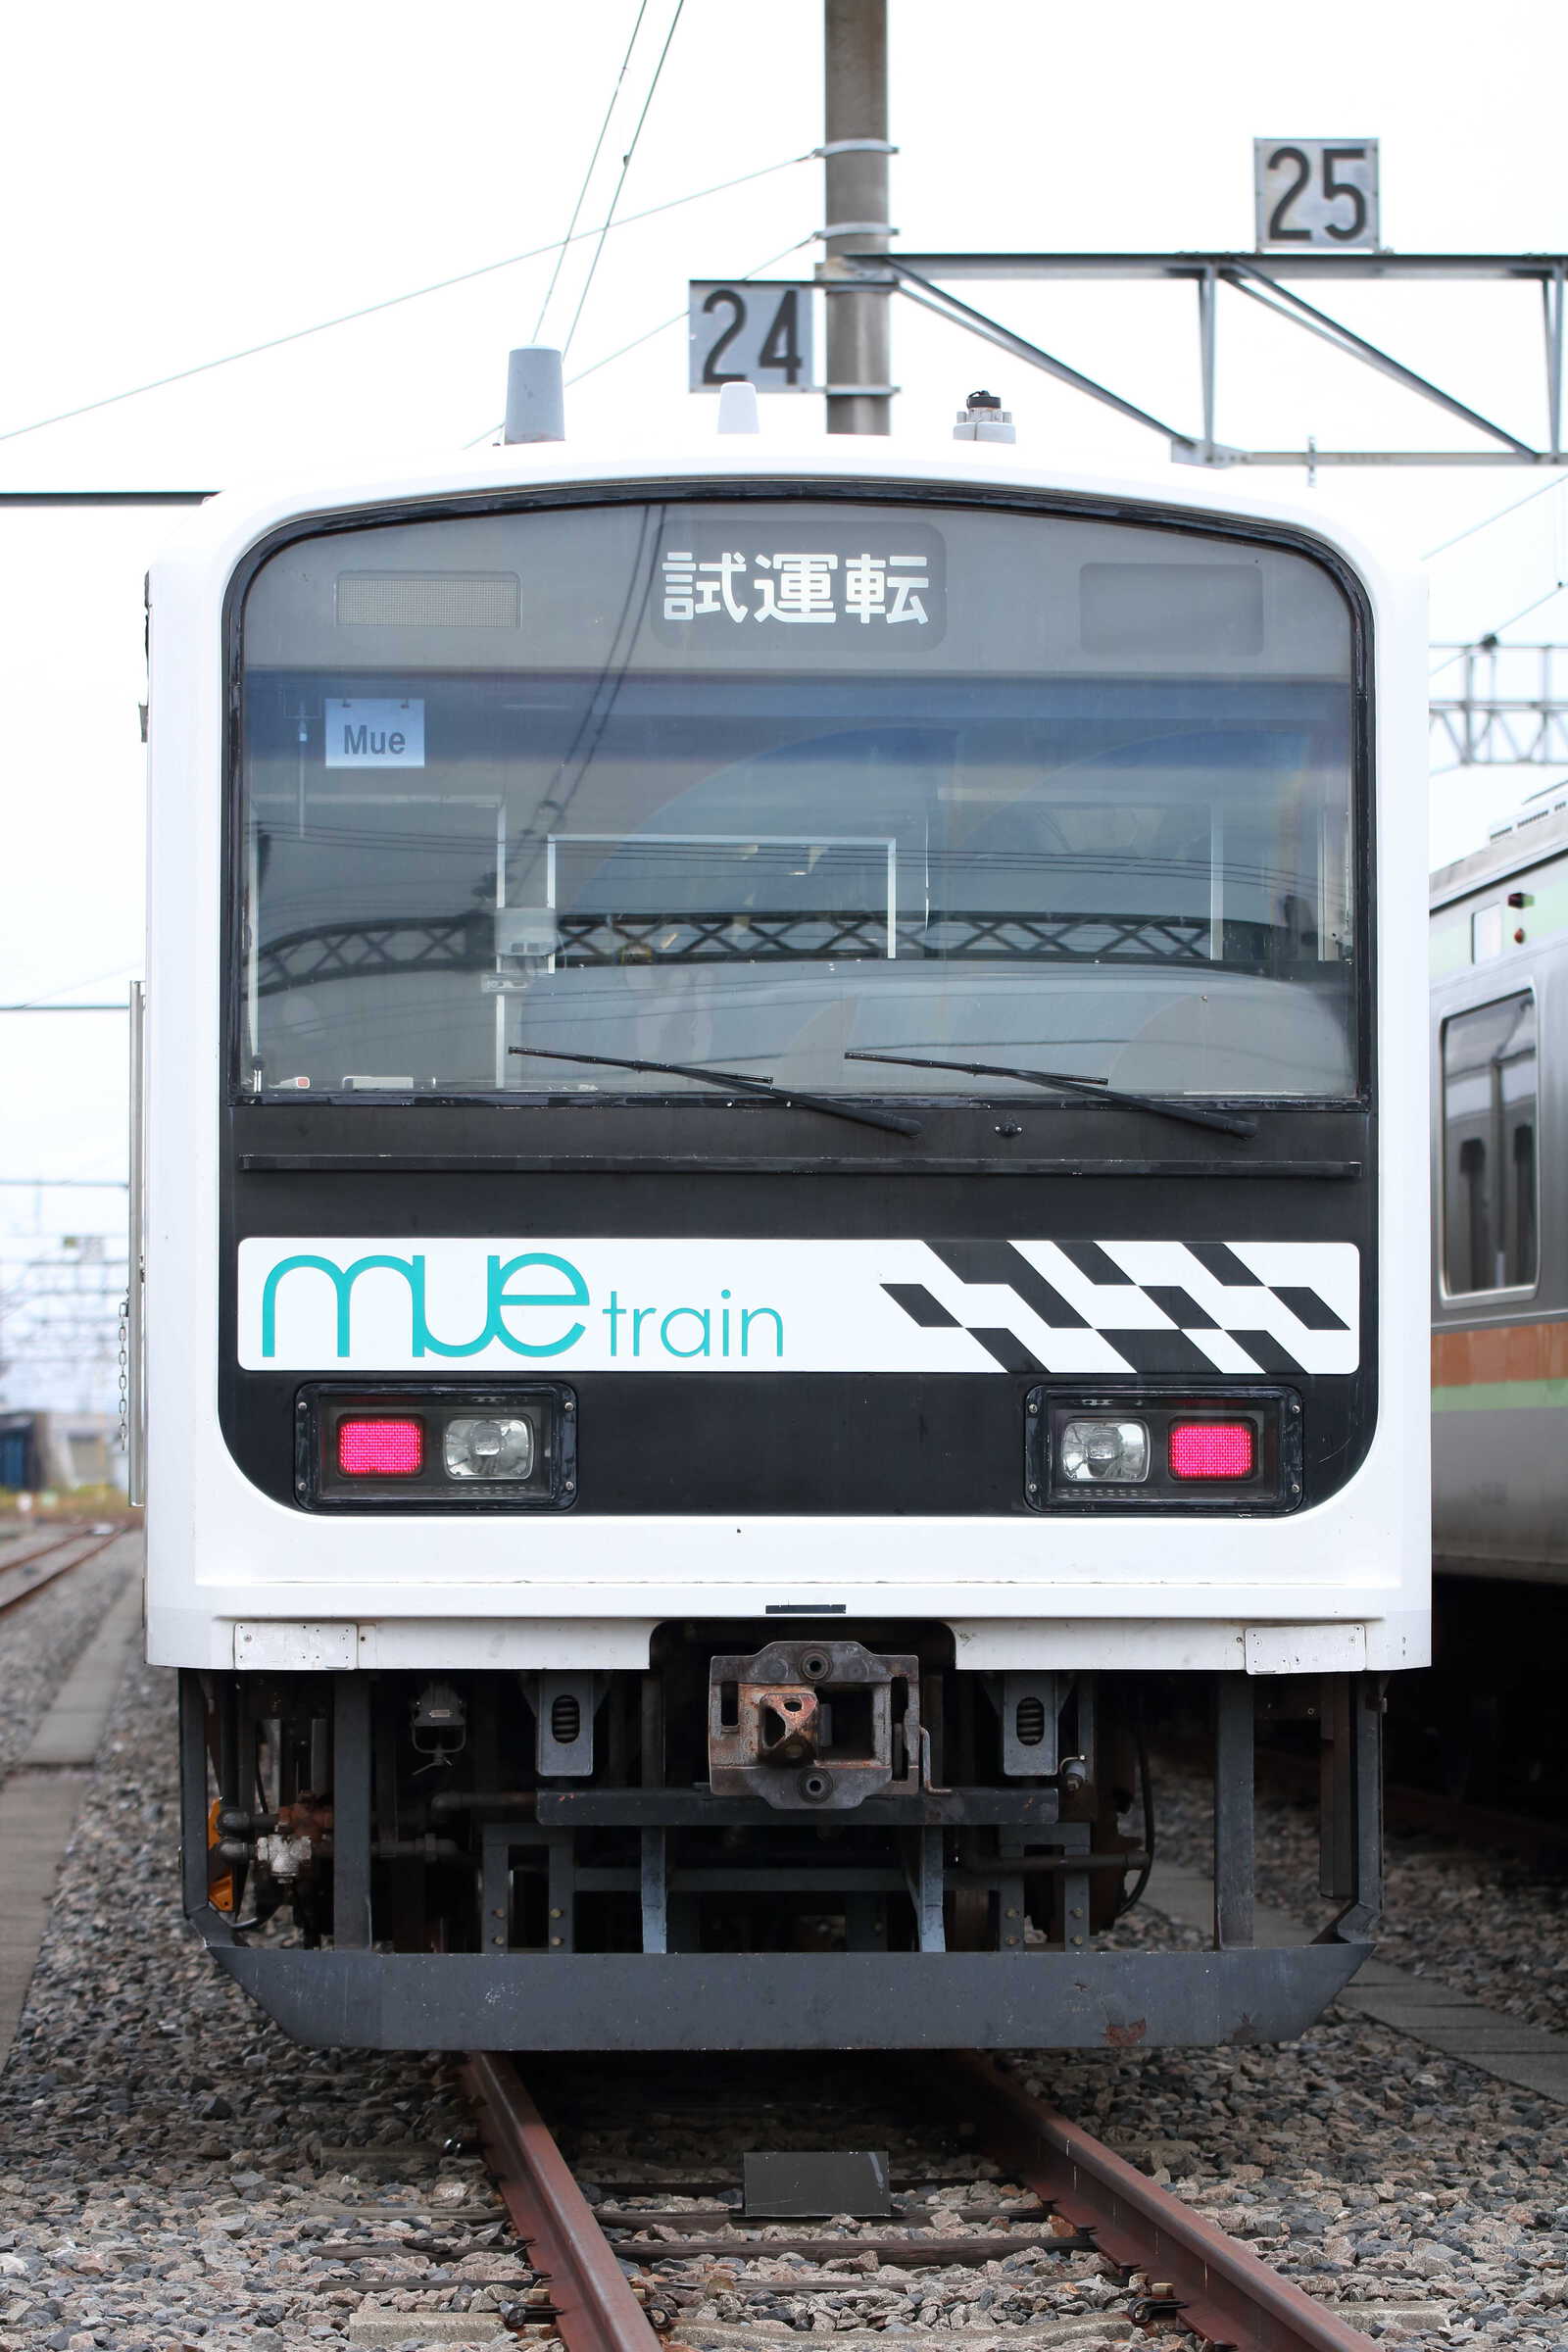 209系 宮ハエMue編成 “Mue Train”